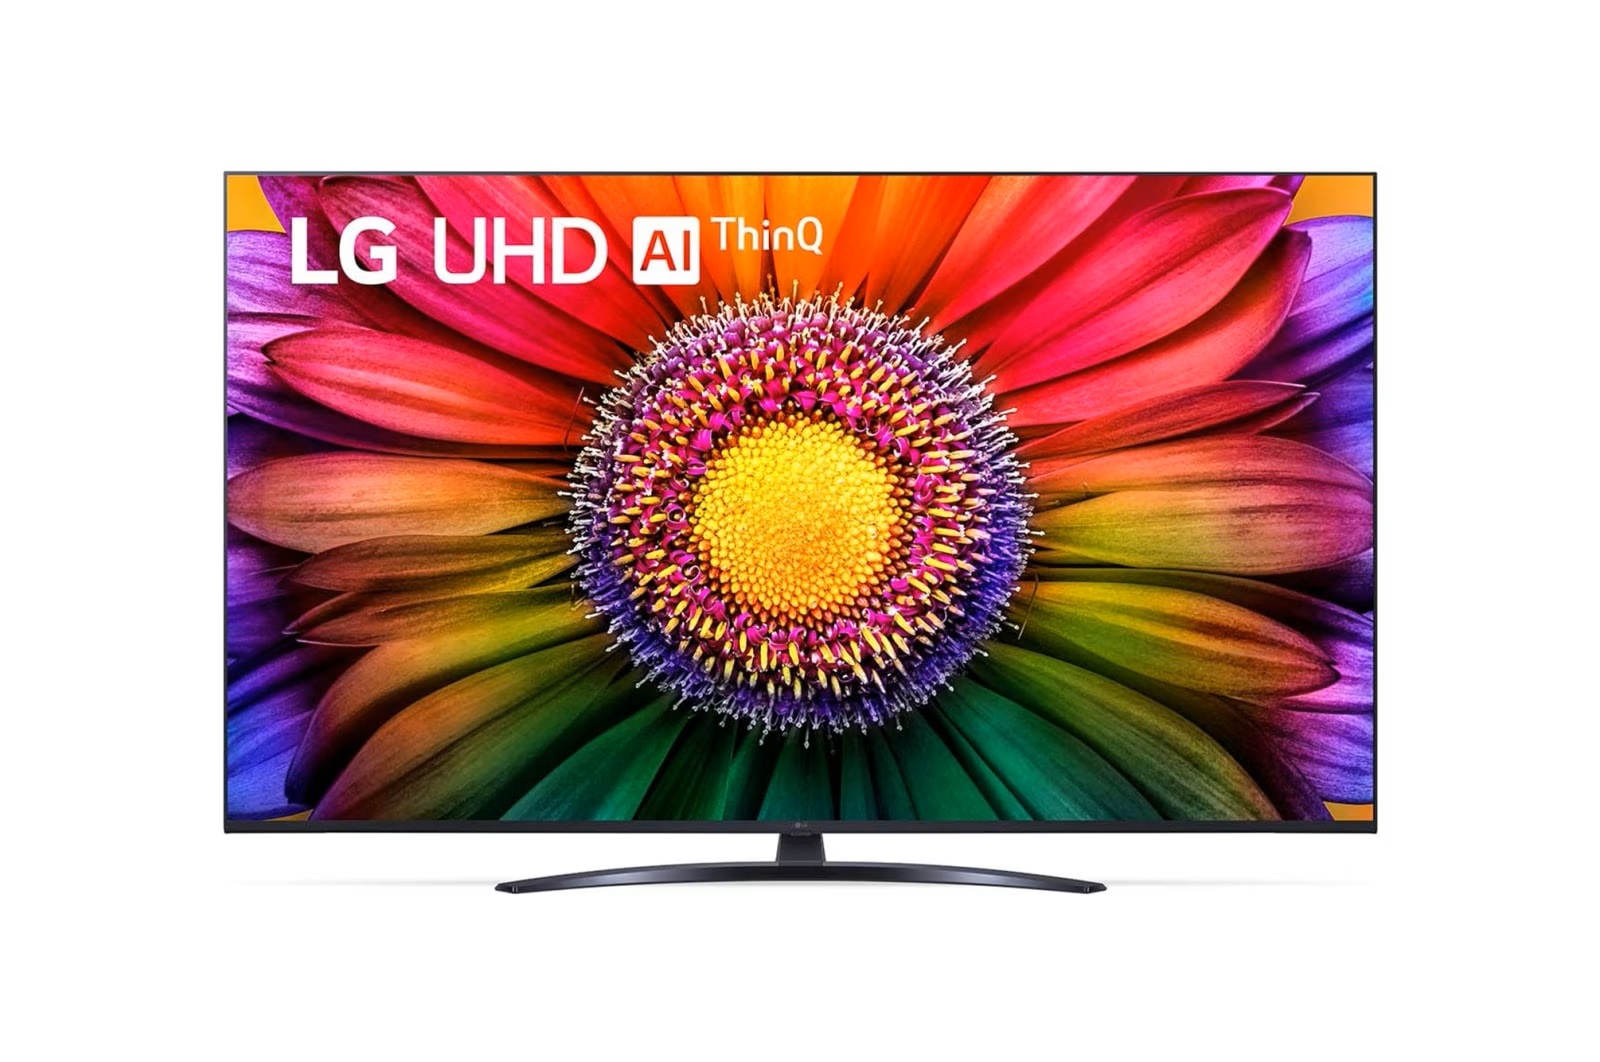 LG 65UR8100 - 4K Smart LED TV, 65' (164cm), HDR10 Pro